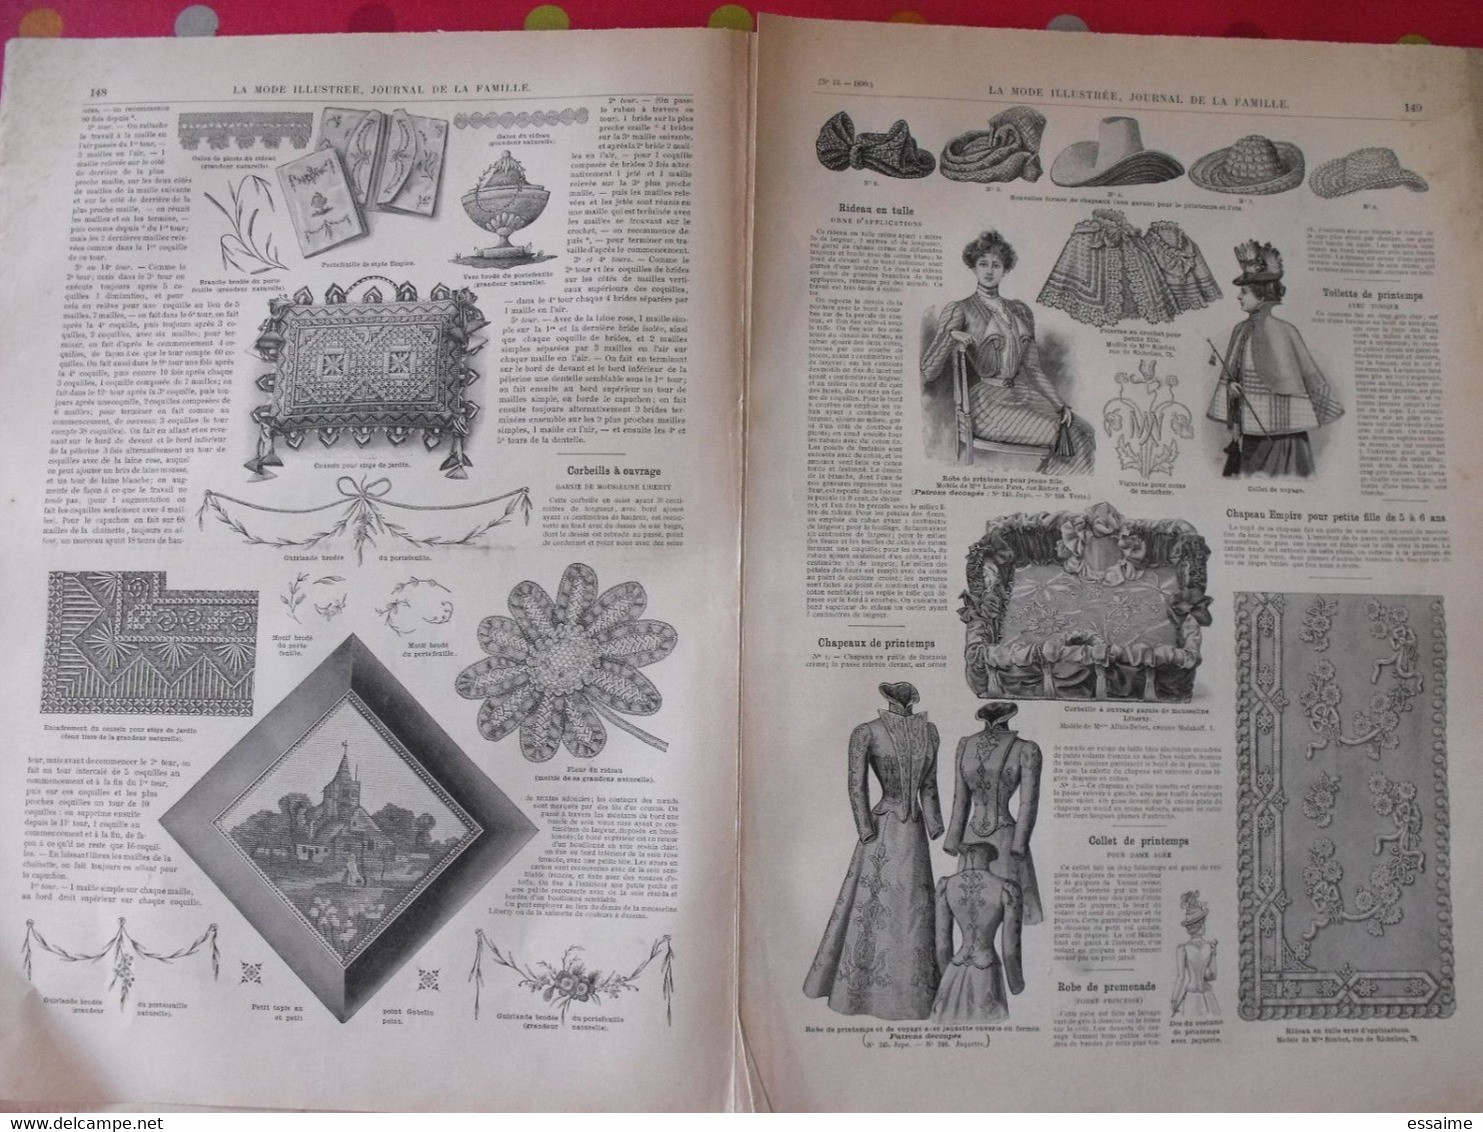 4 revues la mode illustrée, journal de la famille.  n° 10,12,13,14 de 1899. couverture en couleur. jolies gravures